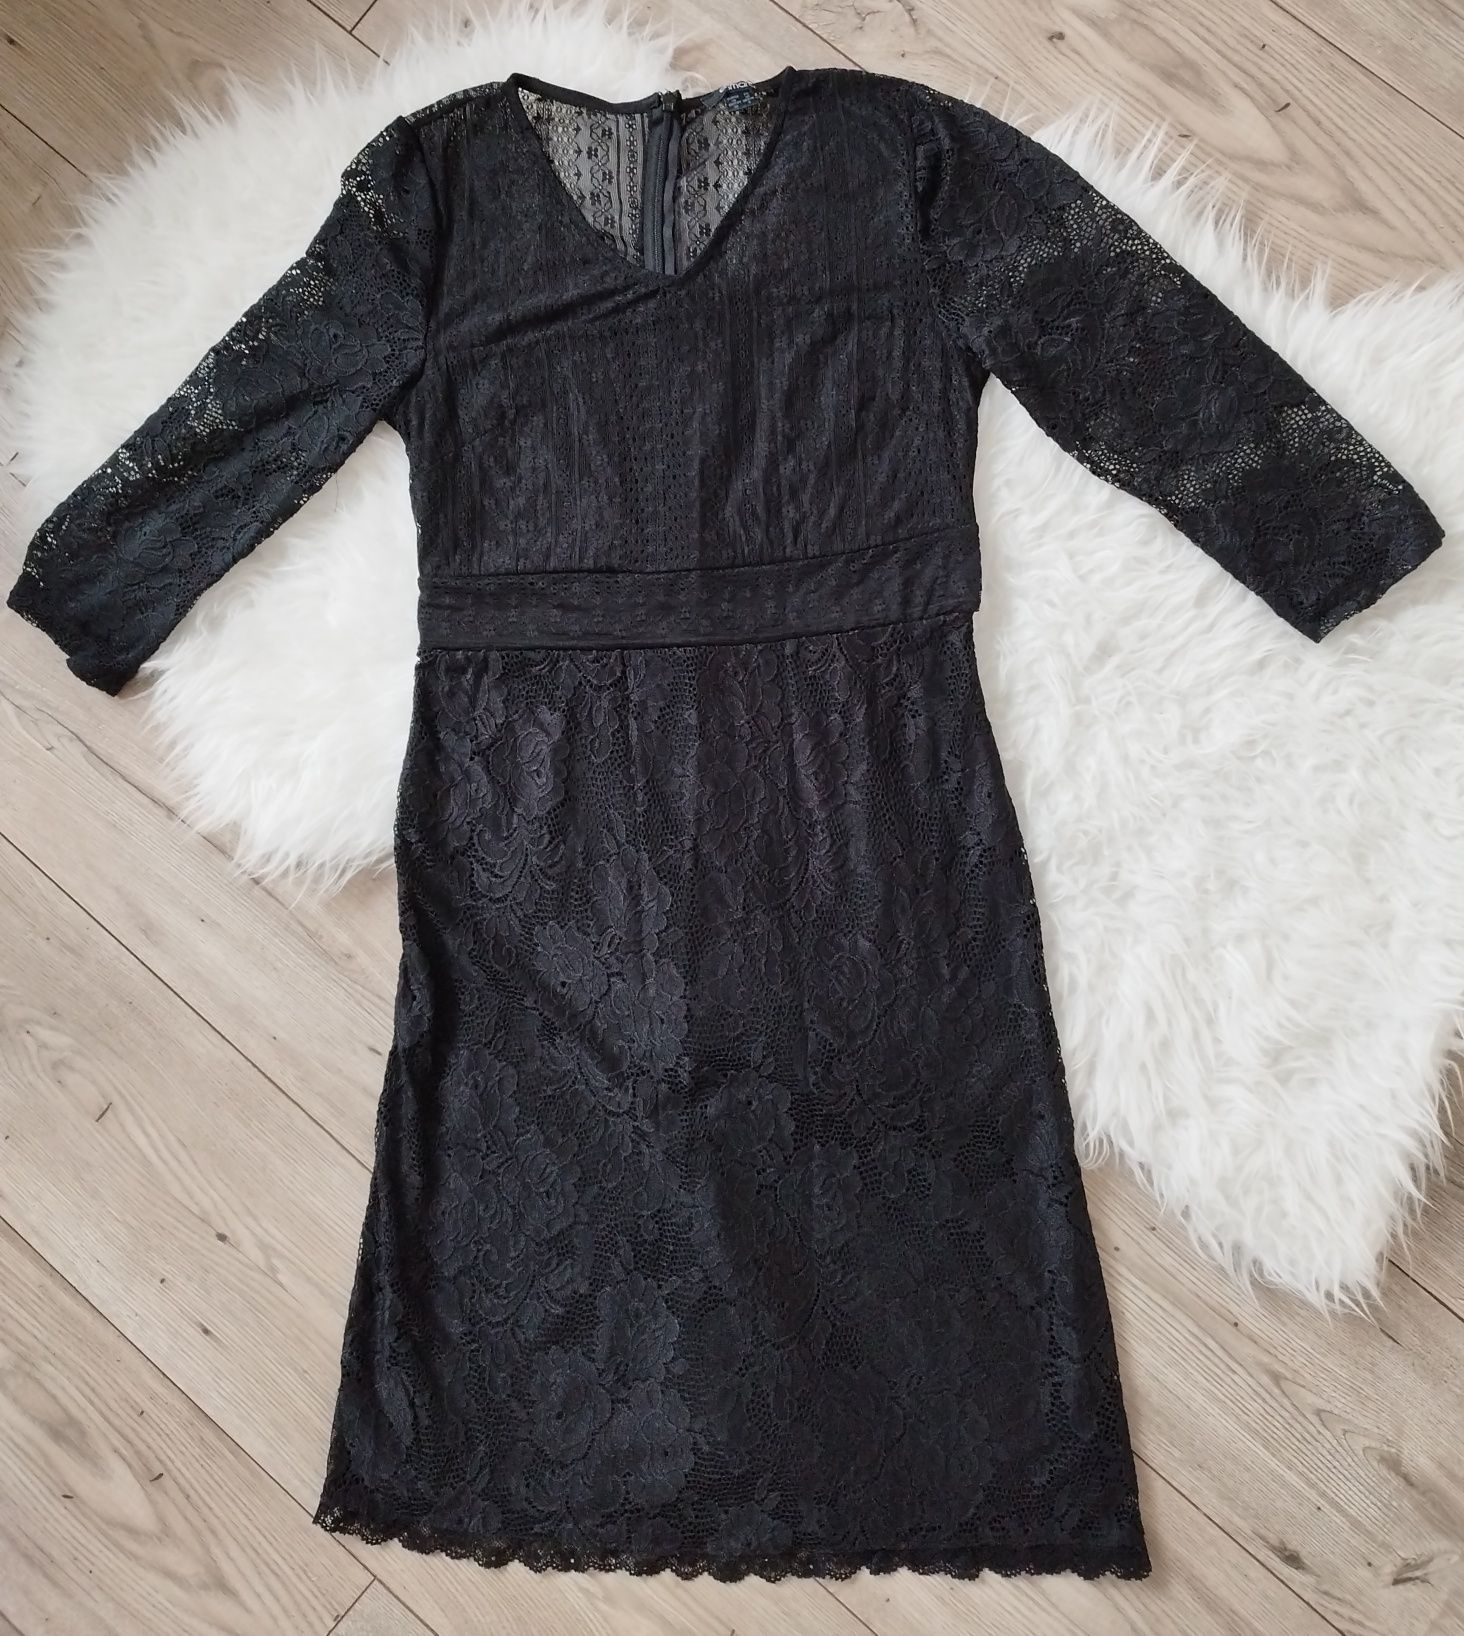 Nowa czarna koronkowa sukienka r. 38